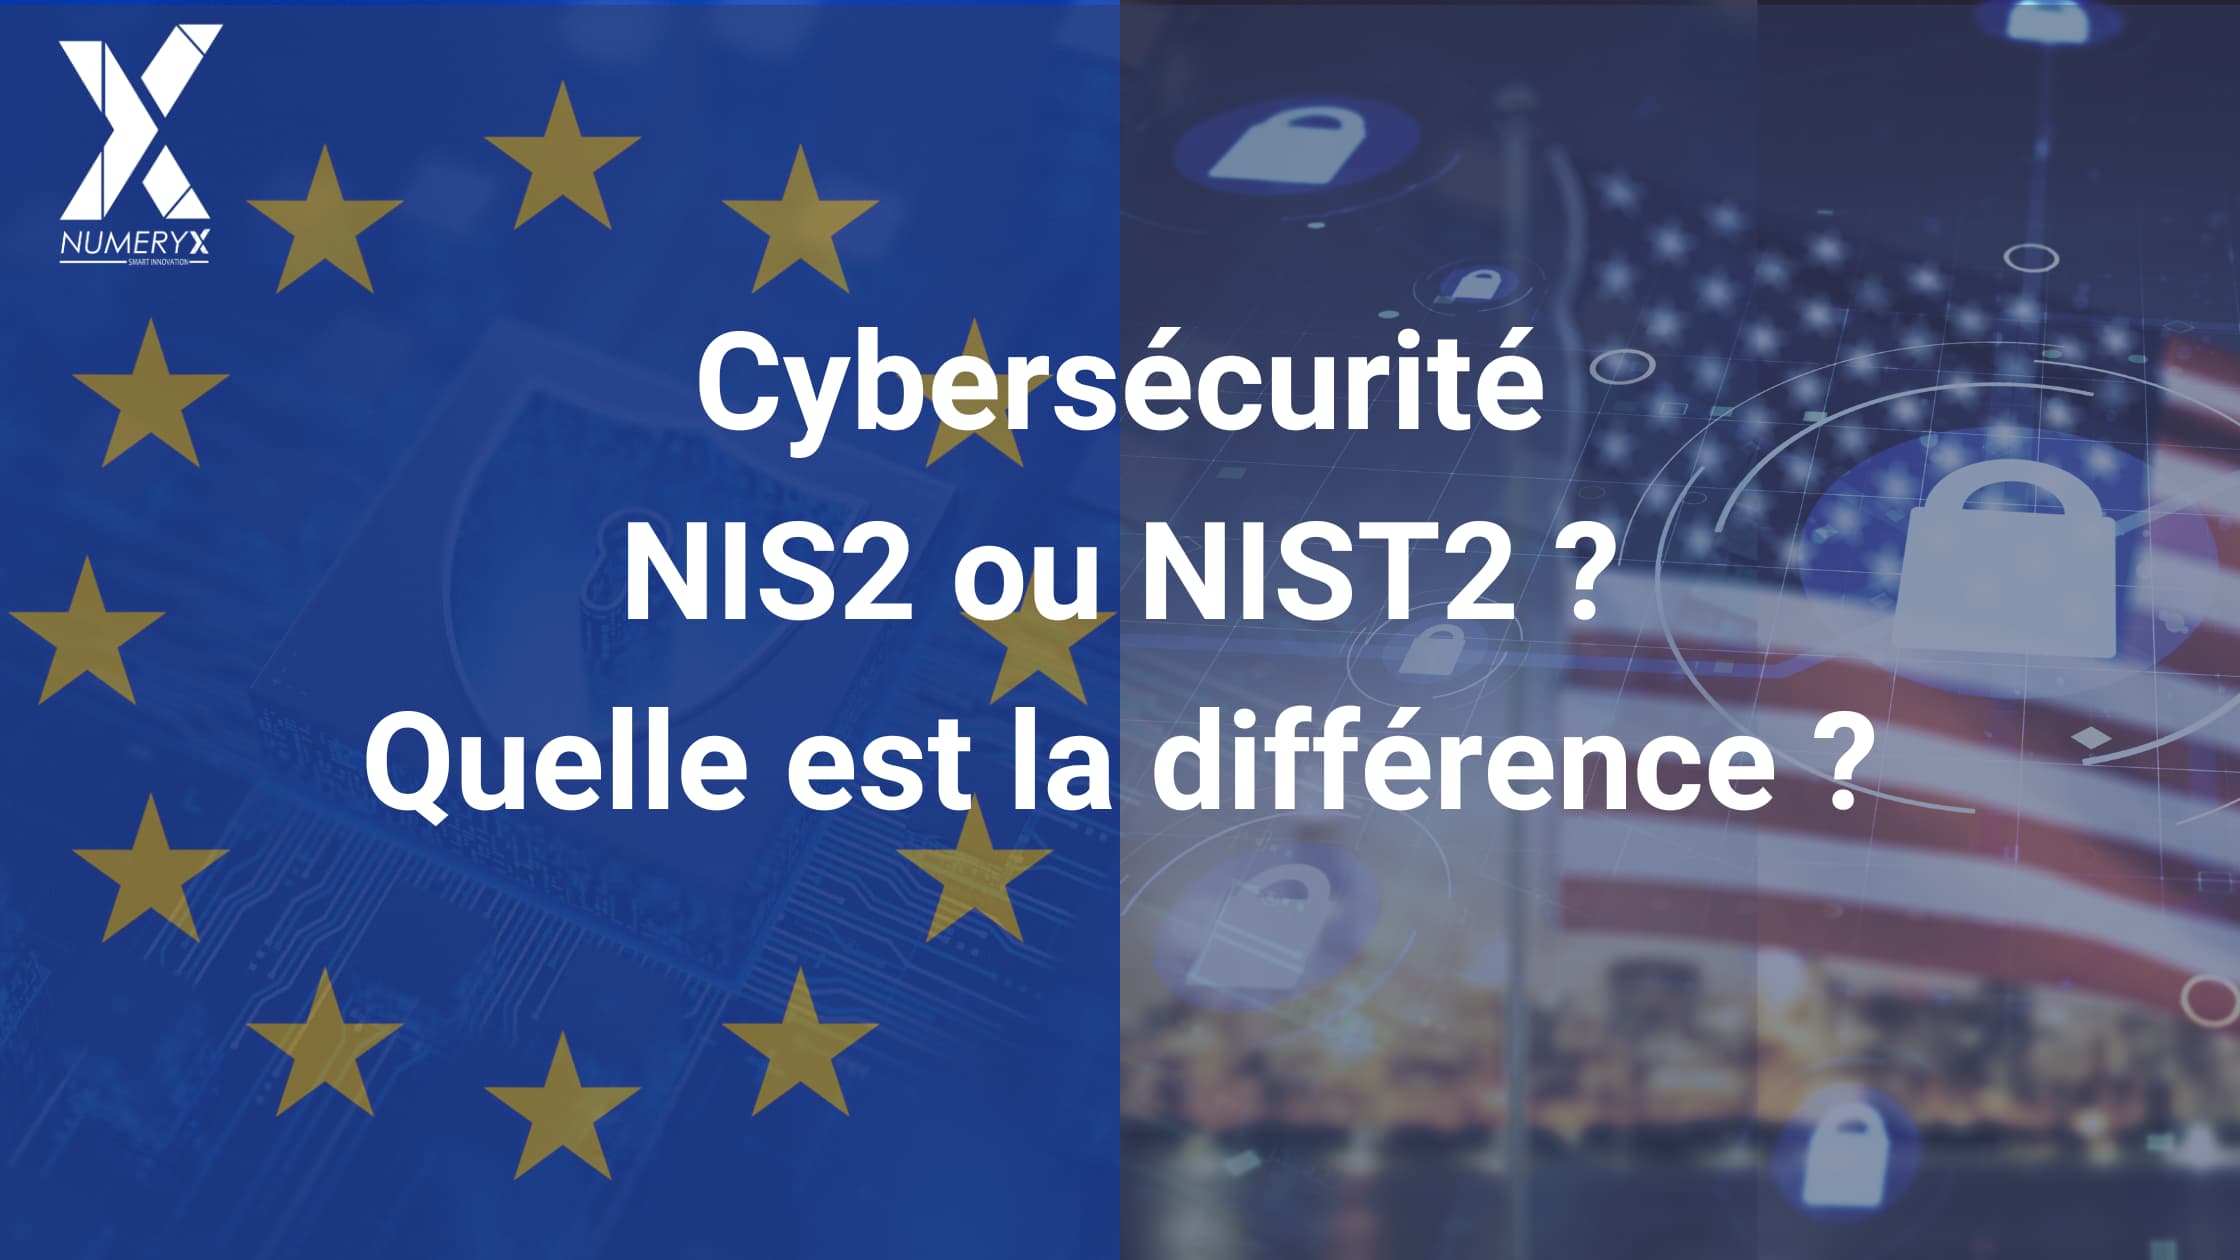 Cybersécurité NIS2 ou NIST2, quelle est la différence ?